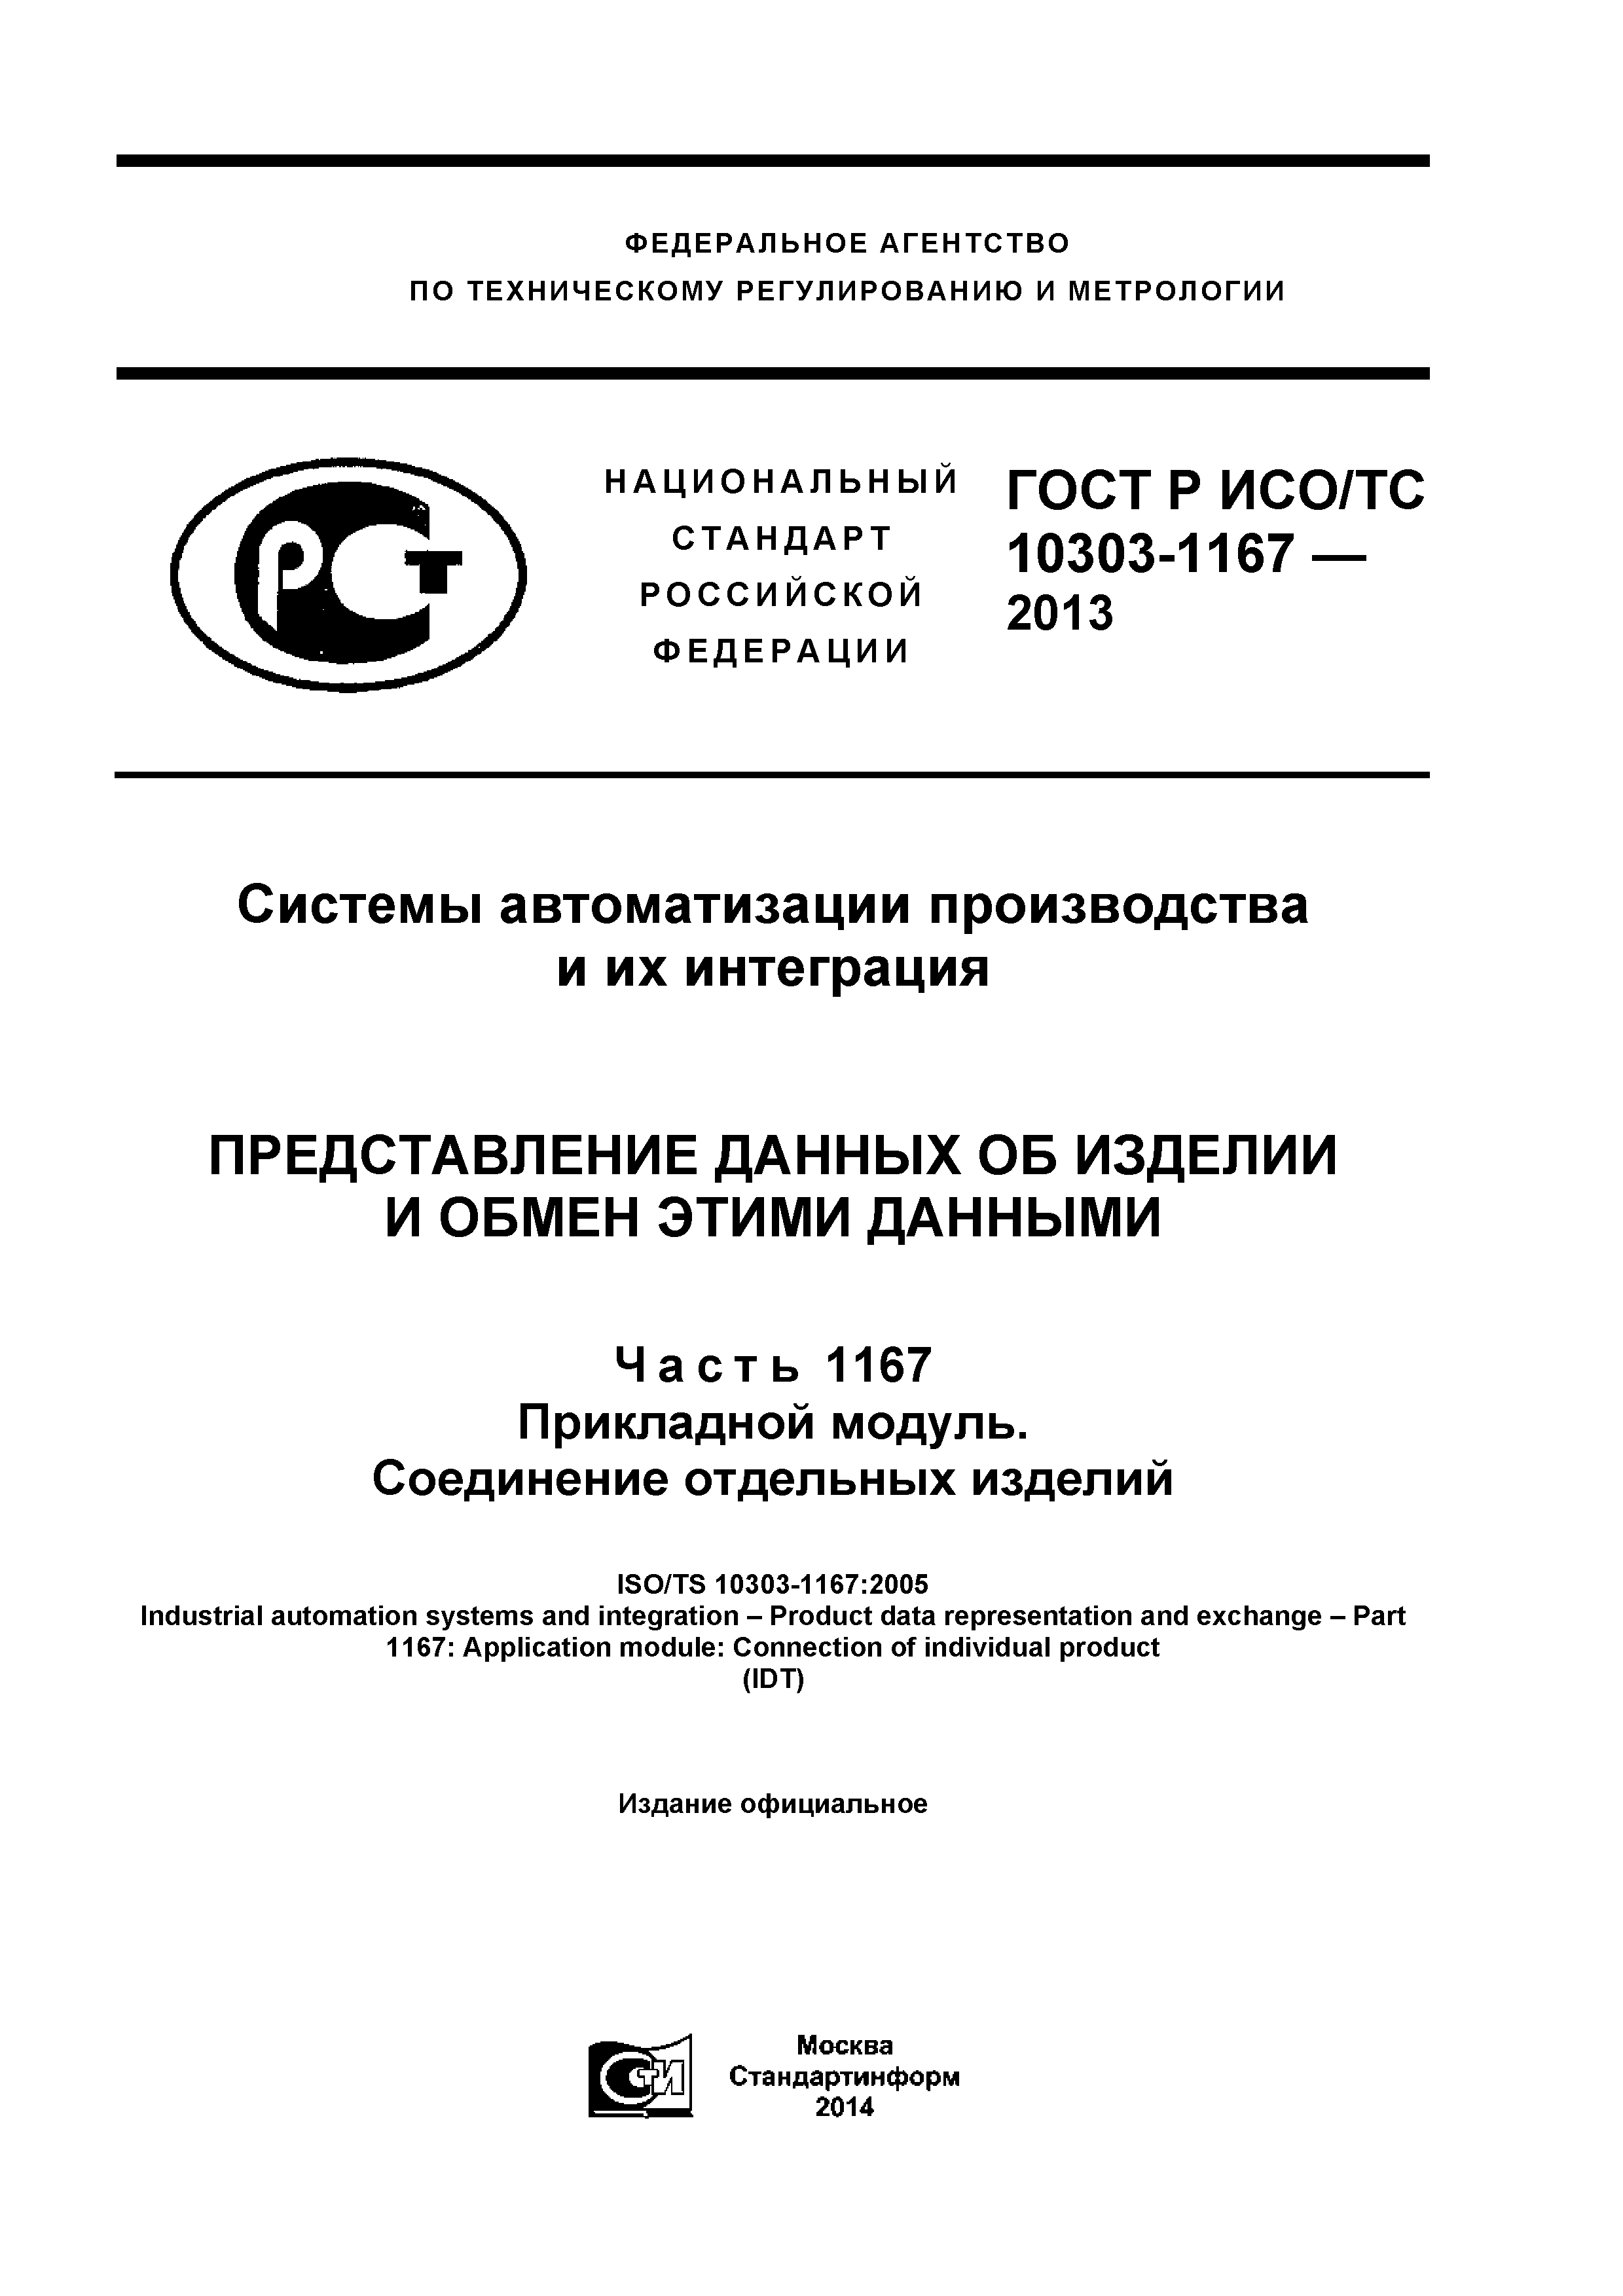 ГОСТ Р ИСО/ТС 10303-1167-2013